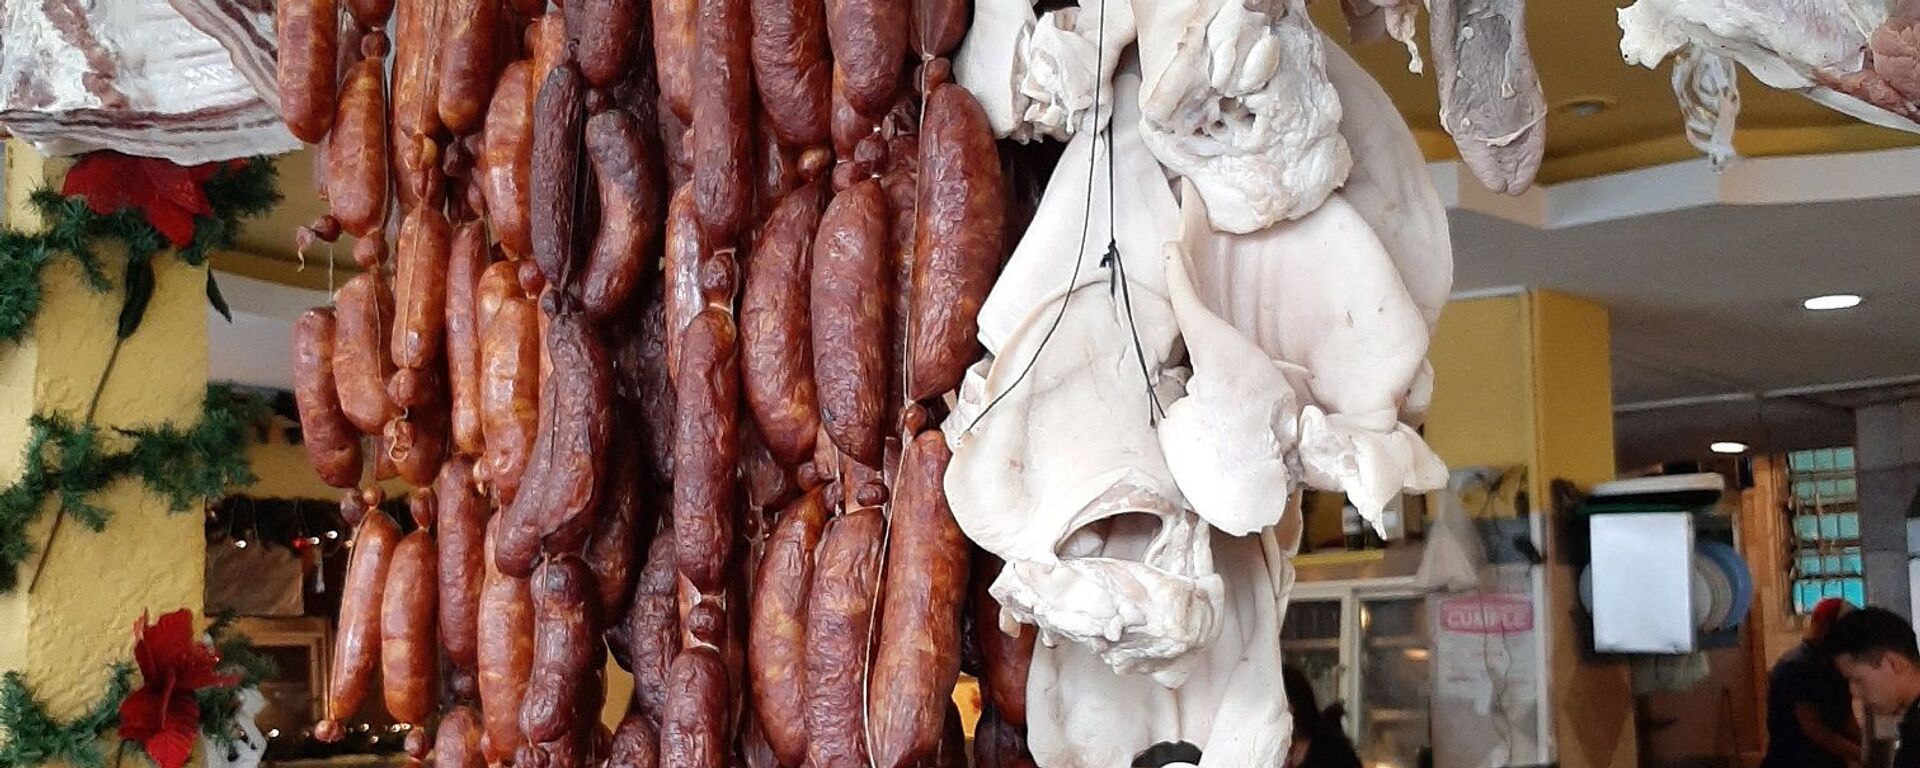 Productos típicos que el turista puede encontrar en El Junquito: chorizo al estilo español y carne de cerdo y res - Sputnik Mundo, 1920, 17.07.2021